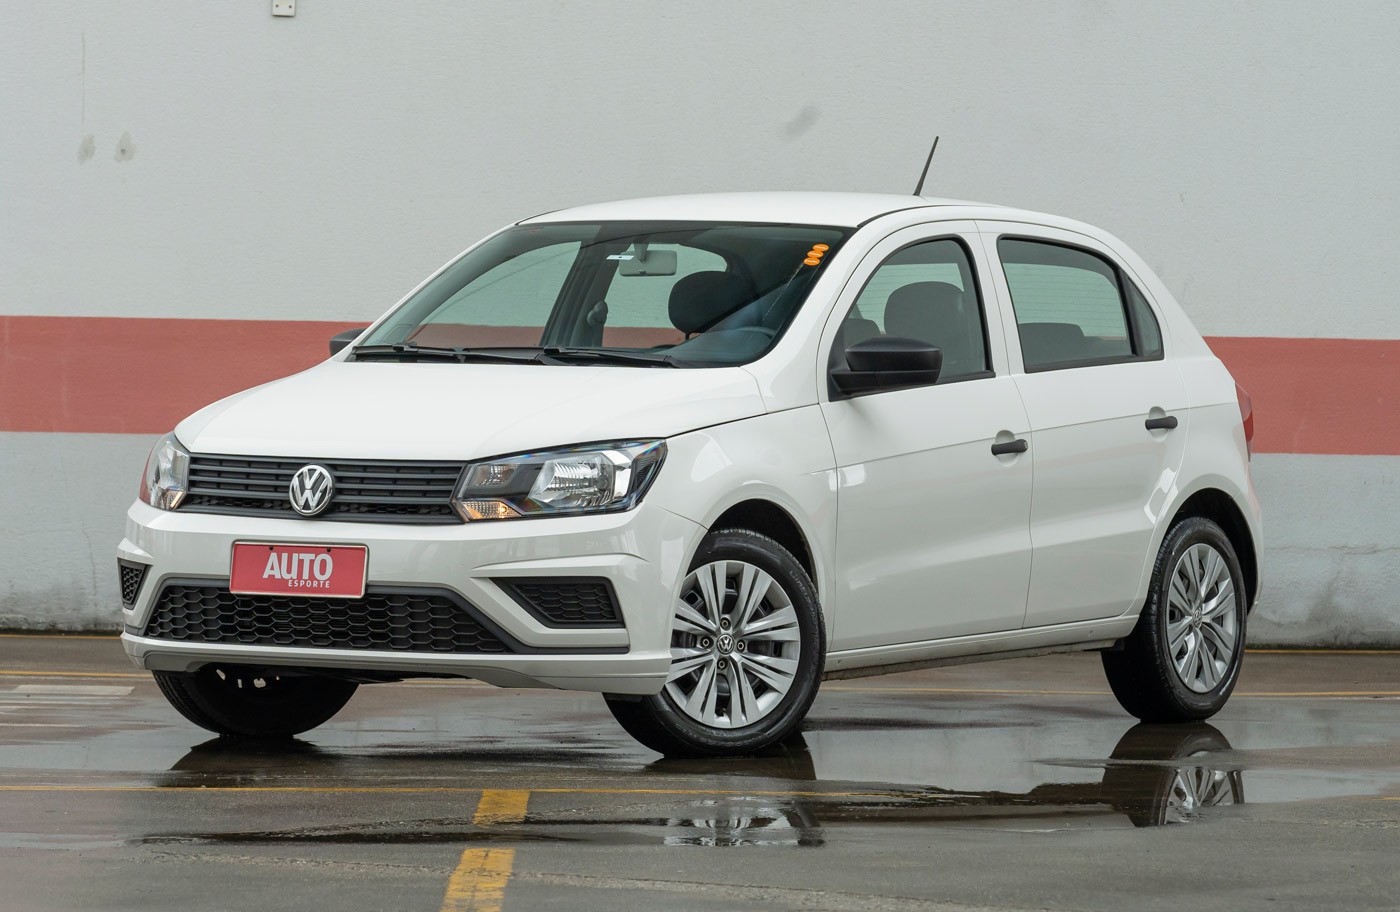 CEO da Volkswagen desmente volta do Gol: “É a nova grávida de Taubaté”